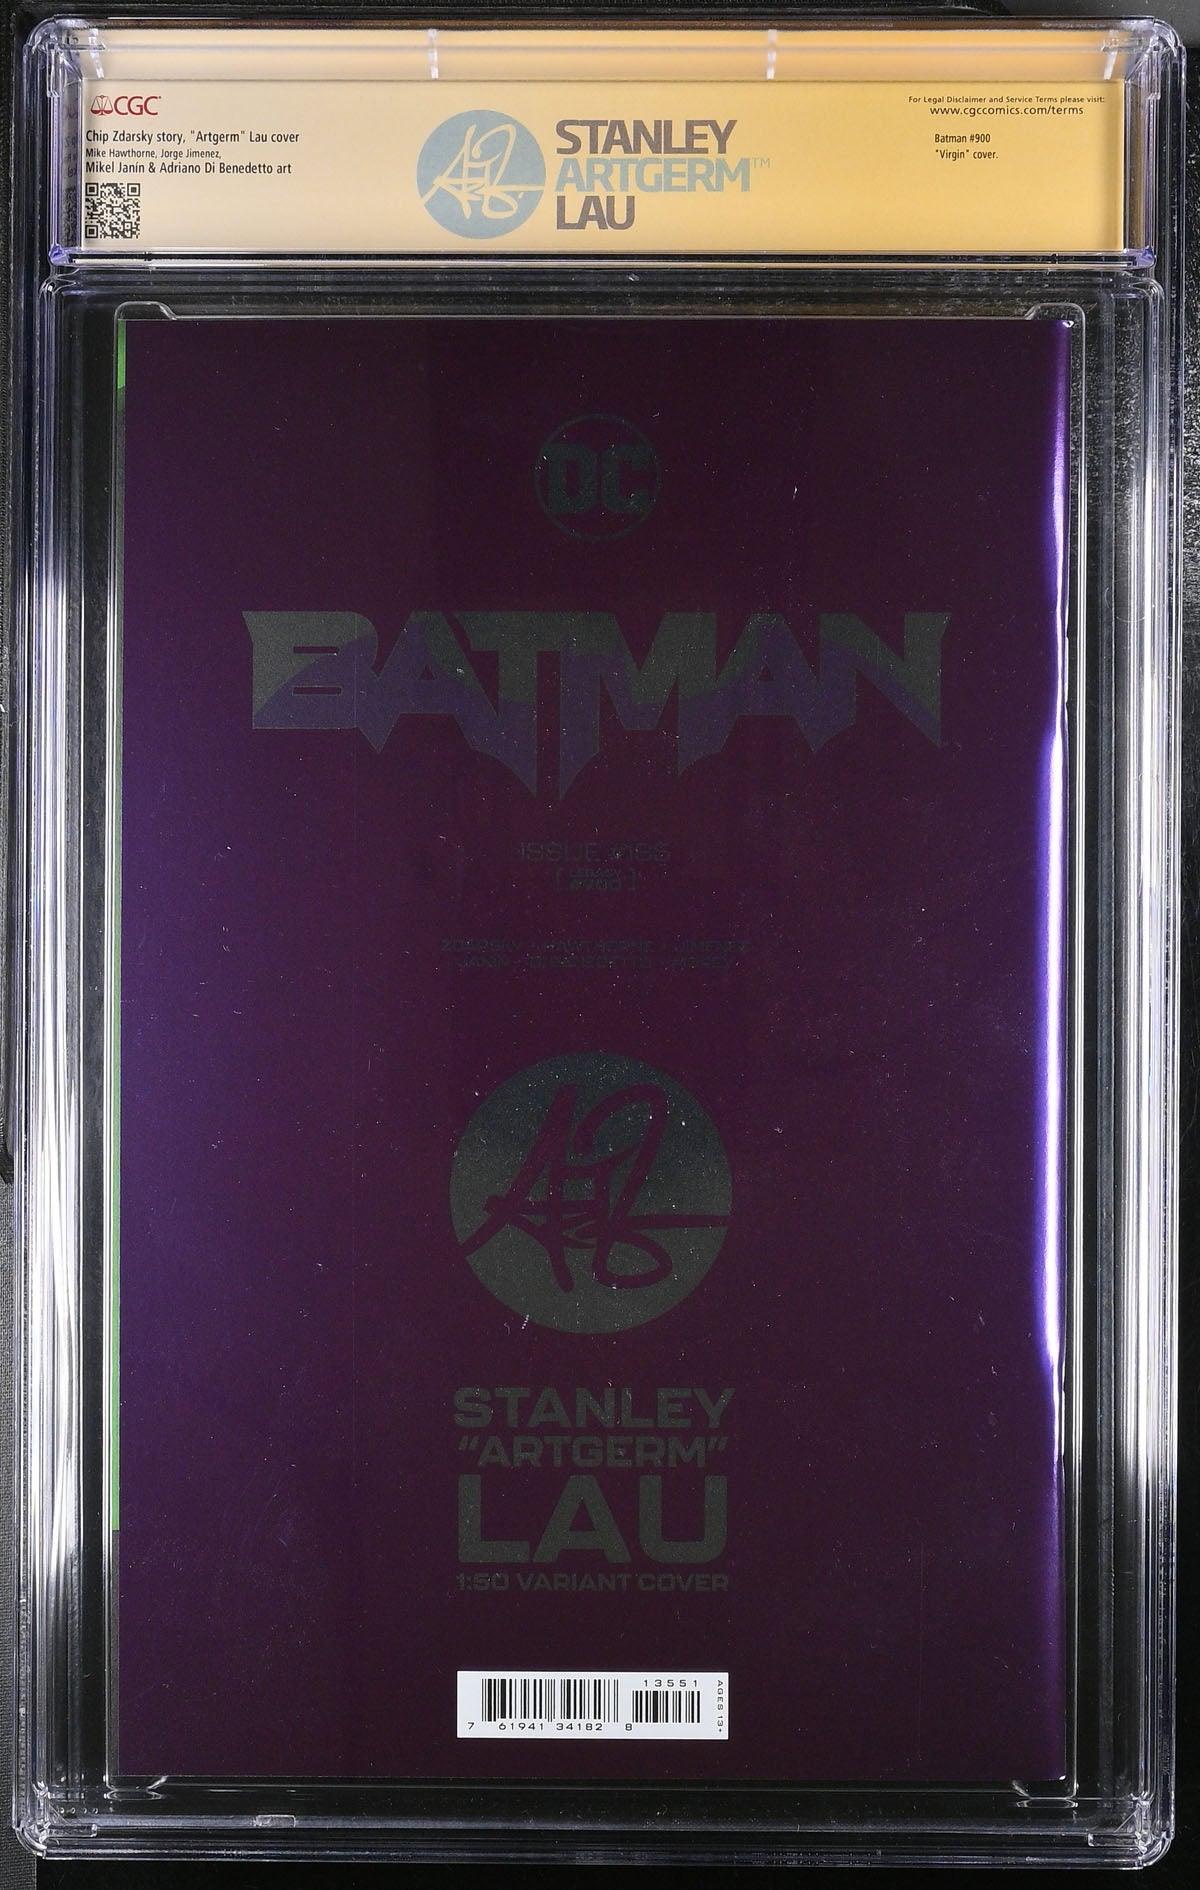 CGC BATMAN VOL 3 #135 1:50 LAU FOIL EDITION (9.8) SIGNATURE SERIES - SIGNED BY STANLEY "ARTGERM" - Kings Comics